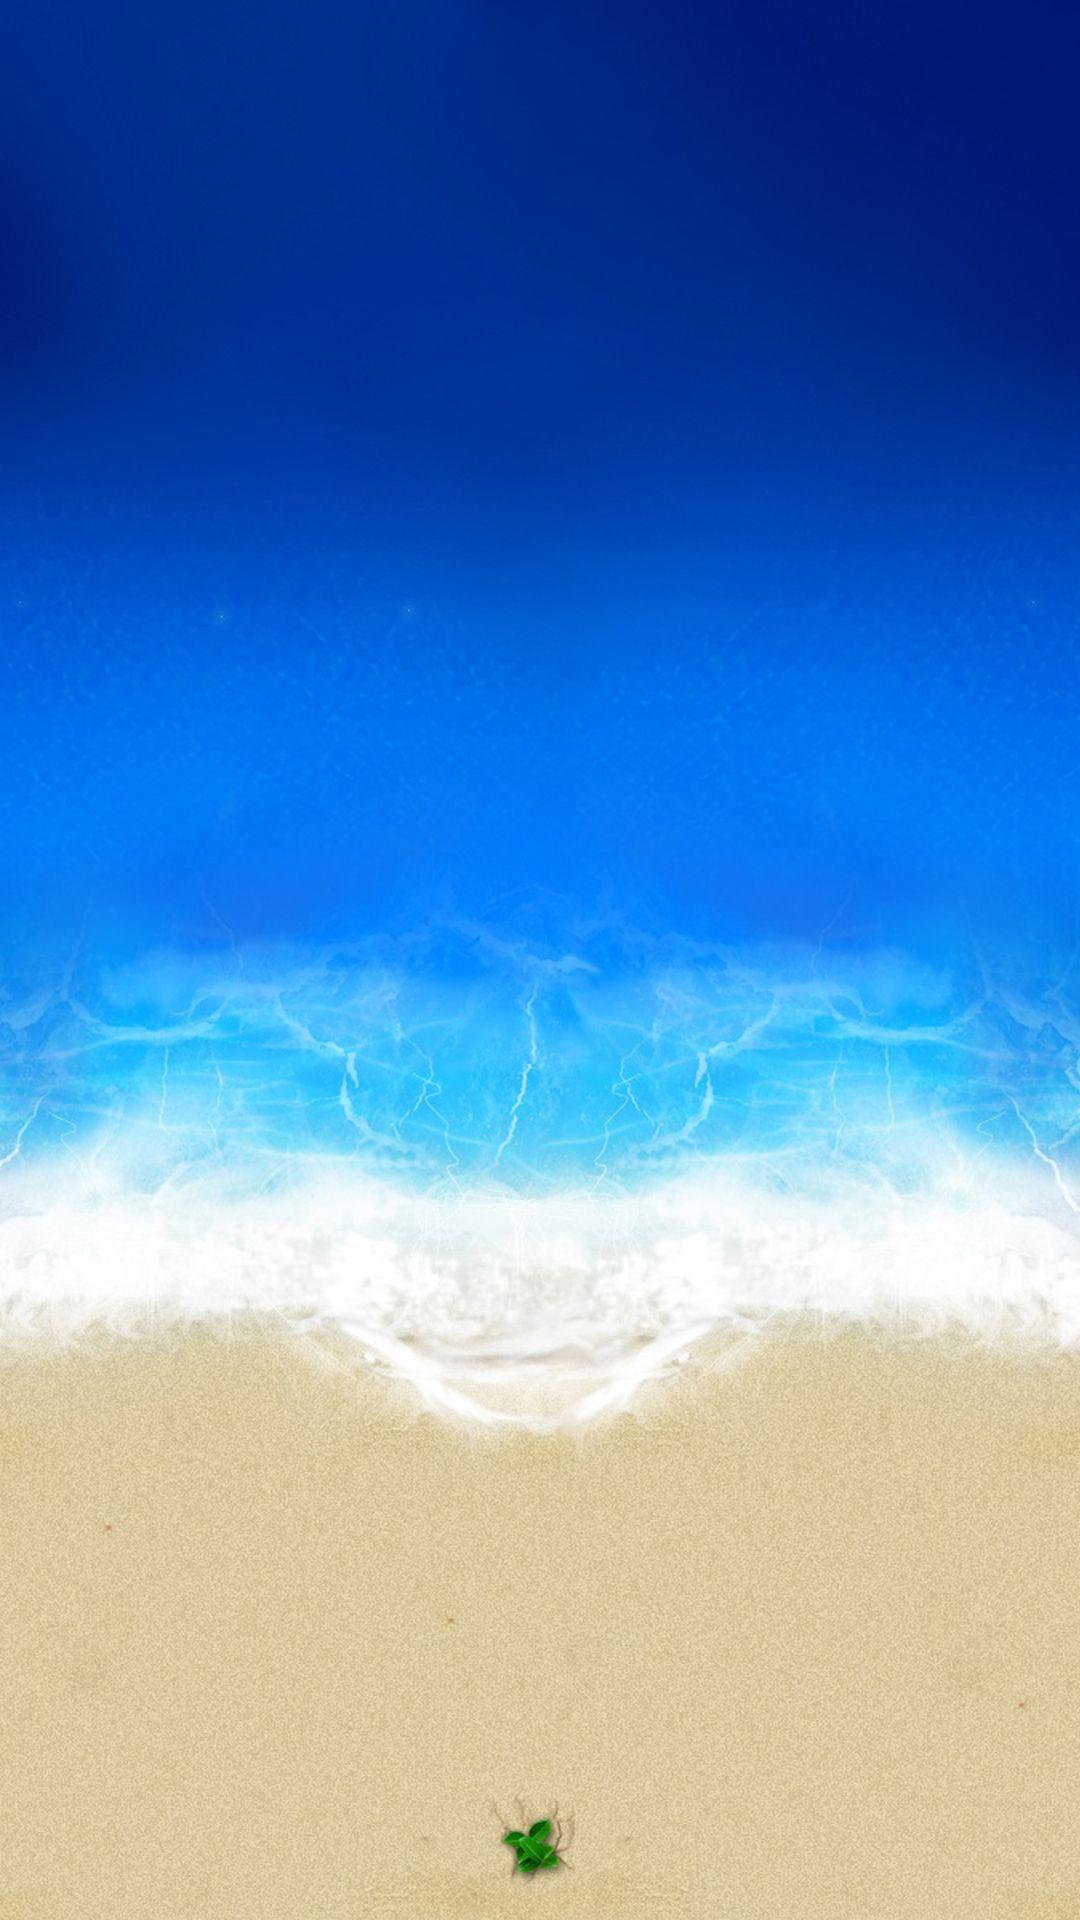 Hình nền Bãi biển sang trọng 1080x1920 cho iPhone 5c. Bãi biển đẹp nhất